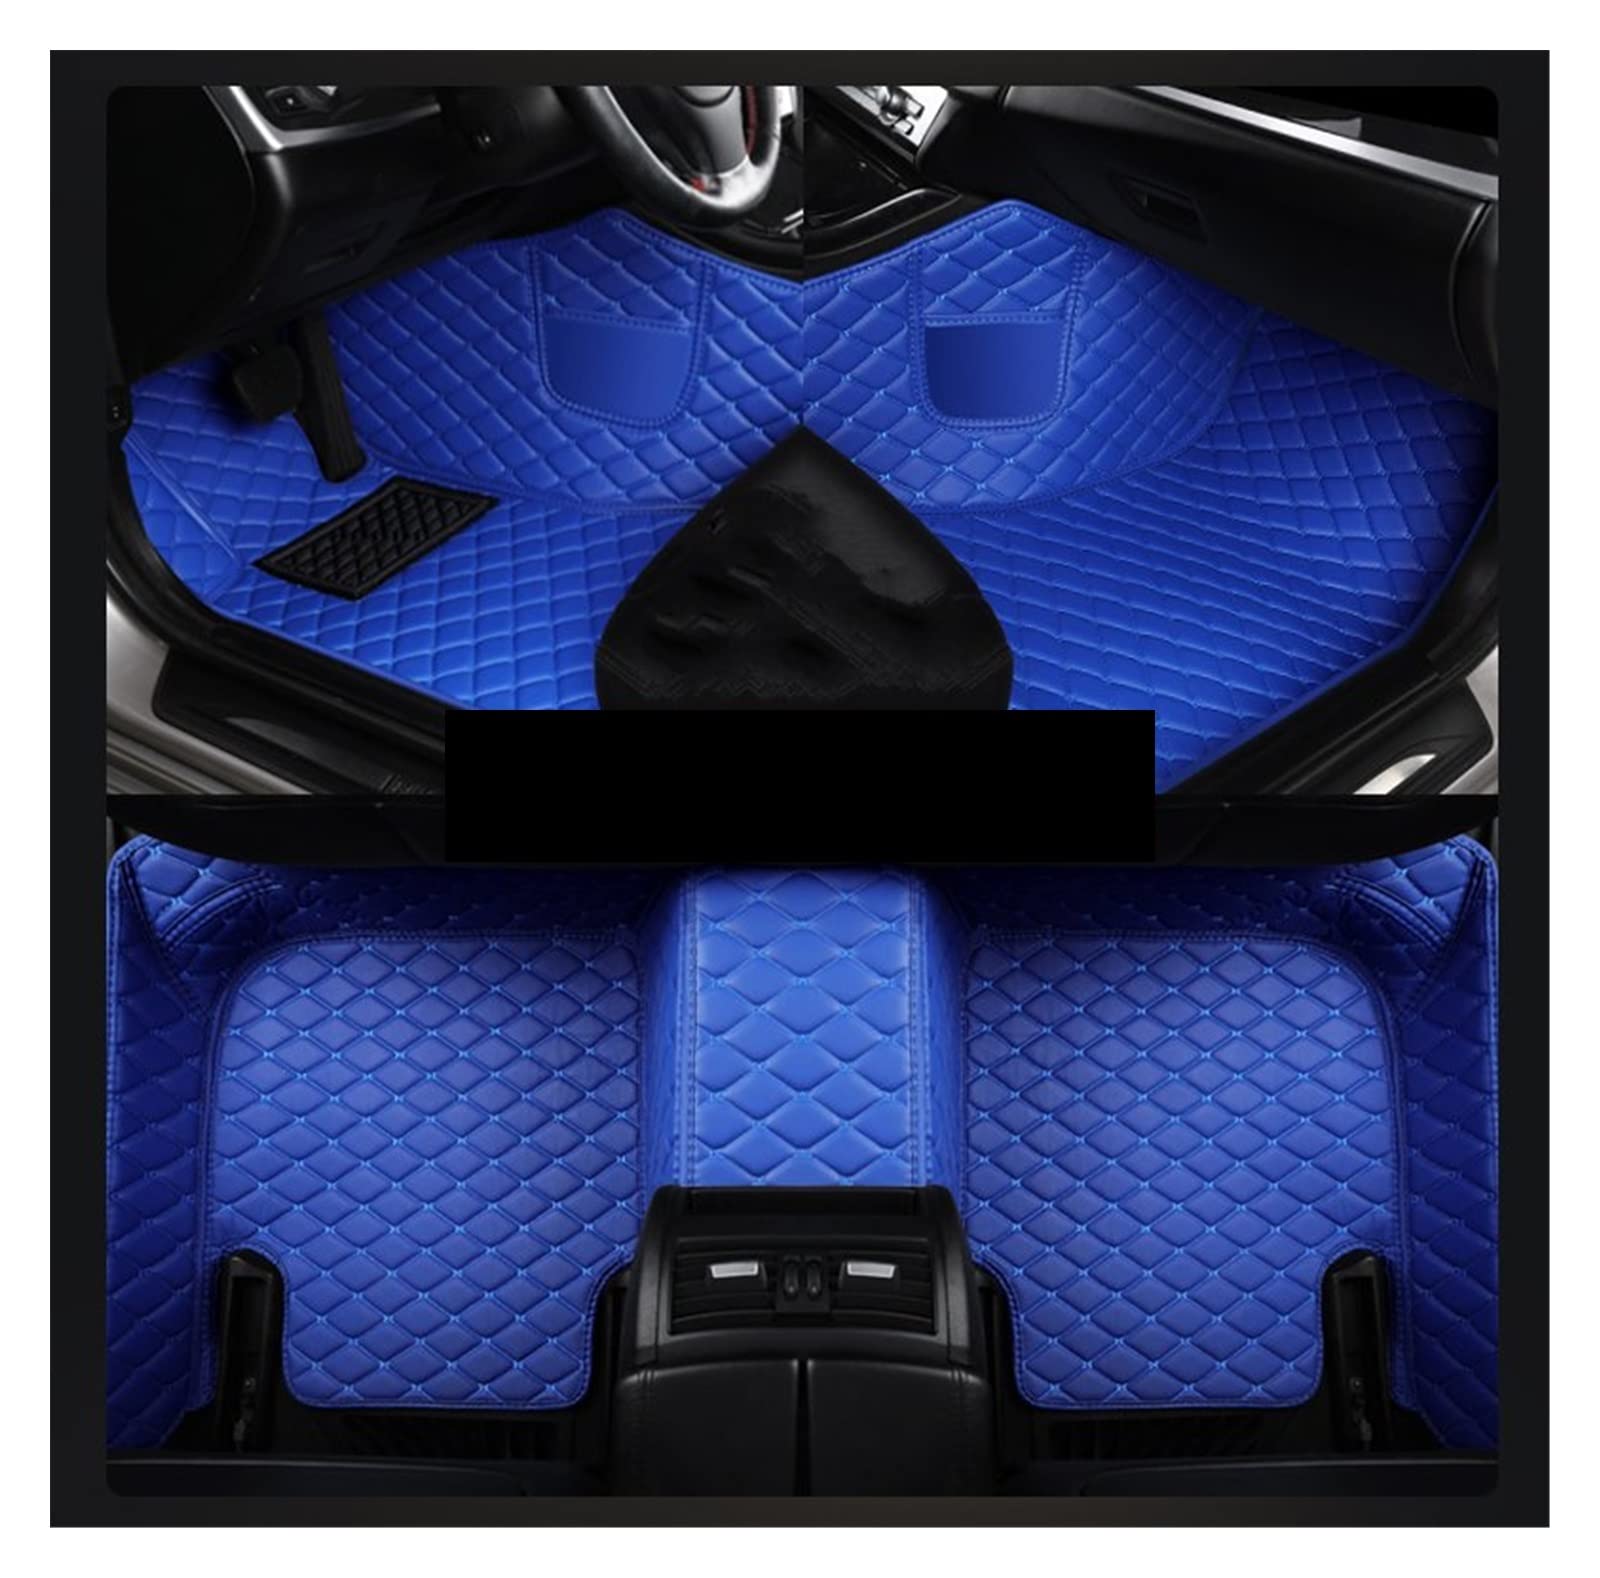 Fußmatten Auto-Fußmatten Für VW Für Touareg 2019 2020 2021 2022 Jahr Umweltfreundliches Leder-Autozubehör Innendetails Autofußmatten(Blau) von DKPMWD